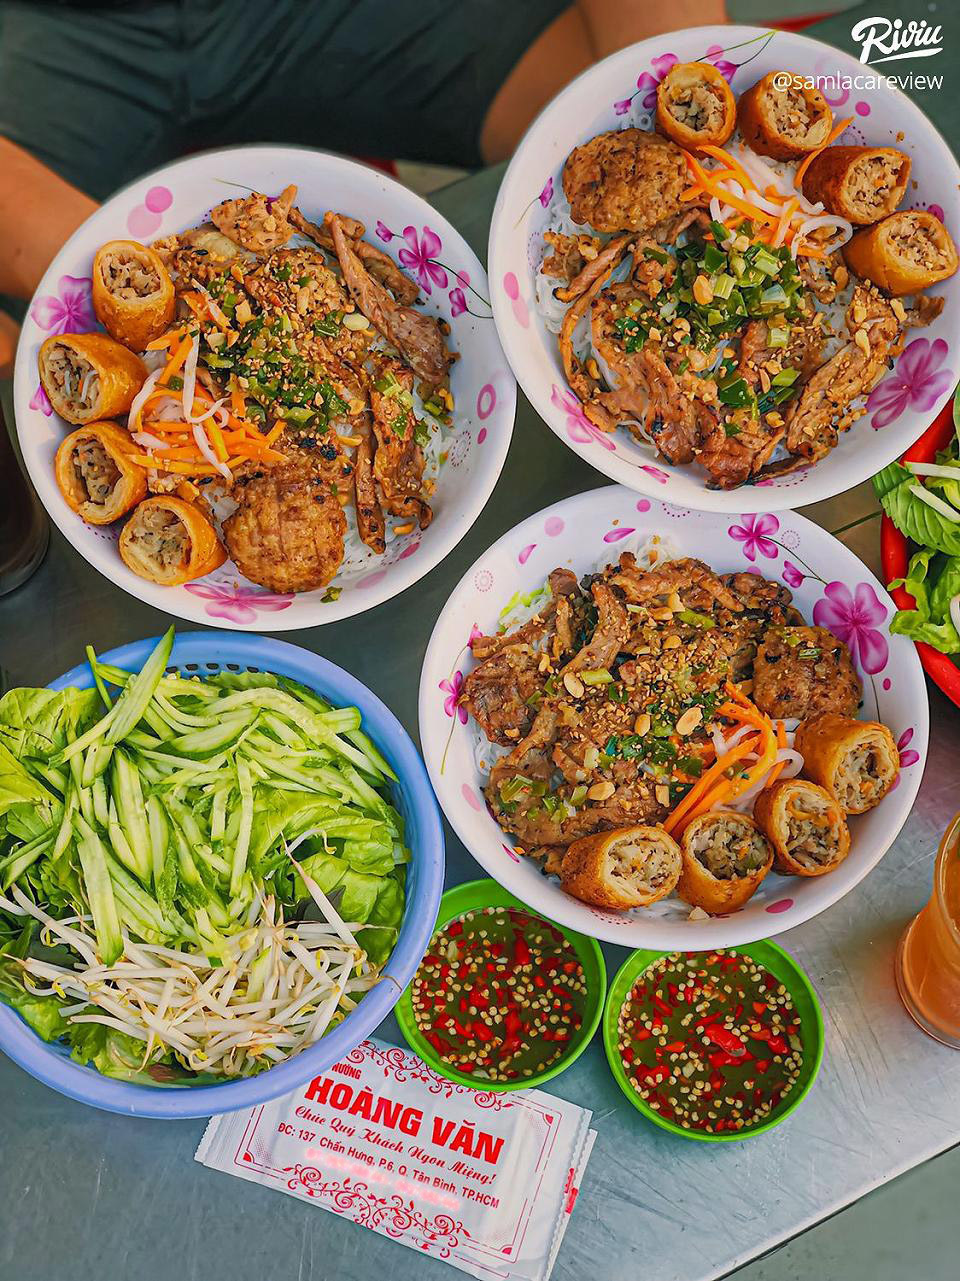  Món thịt quay hoyang wan nổi tiếng ở Tan Bin là thương hiệu Bún.  (Ảnh: Đánh giá)